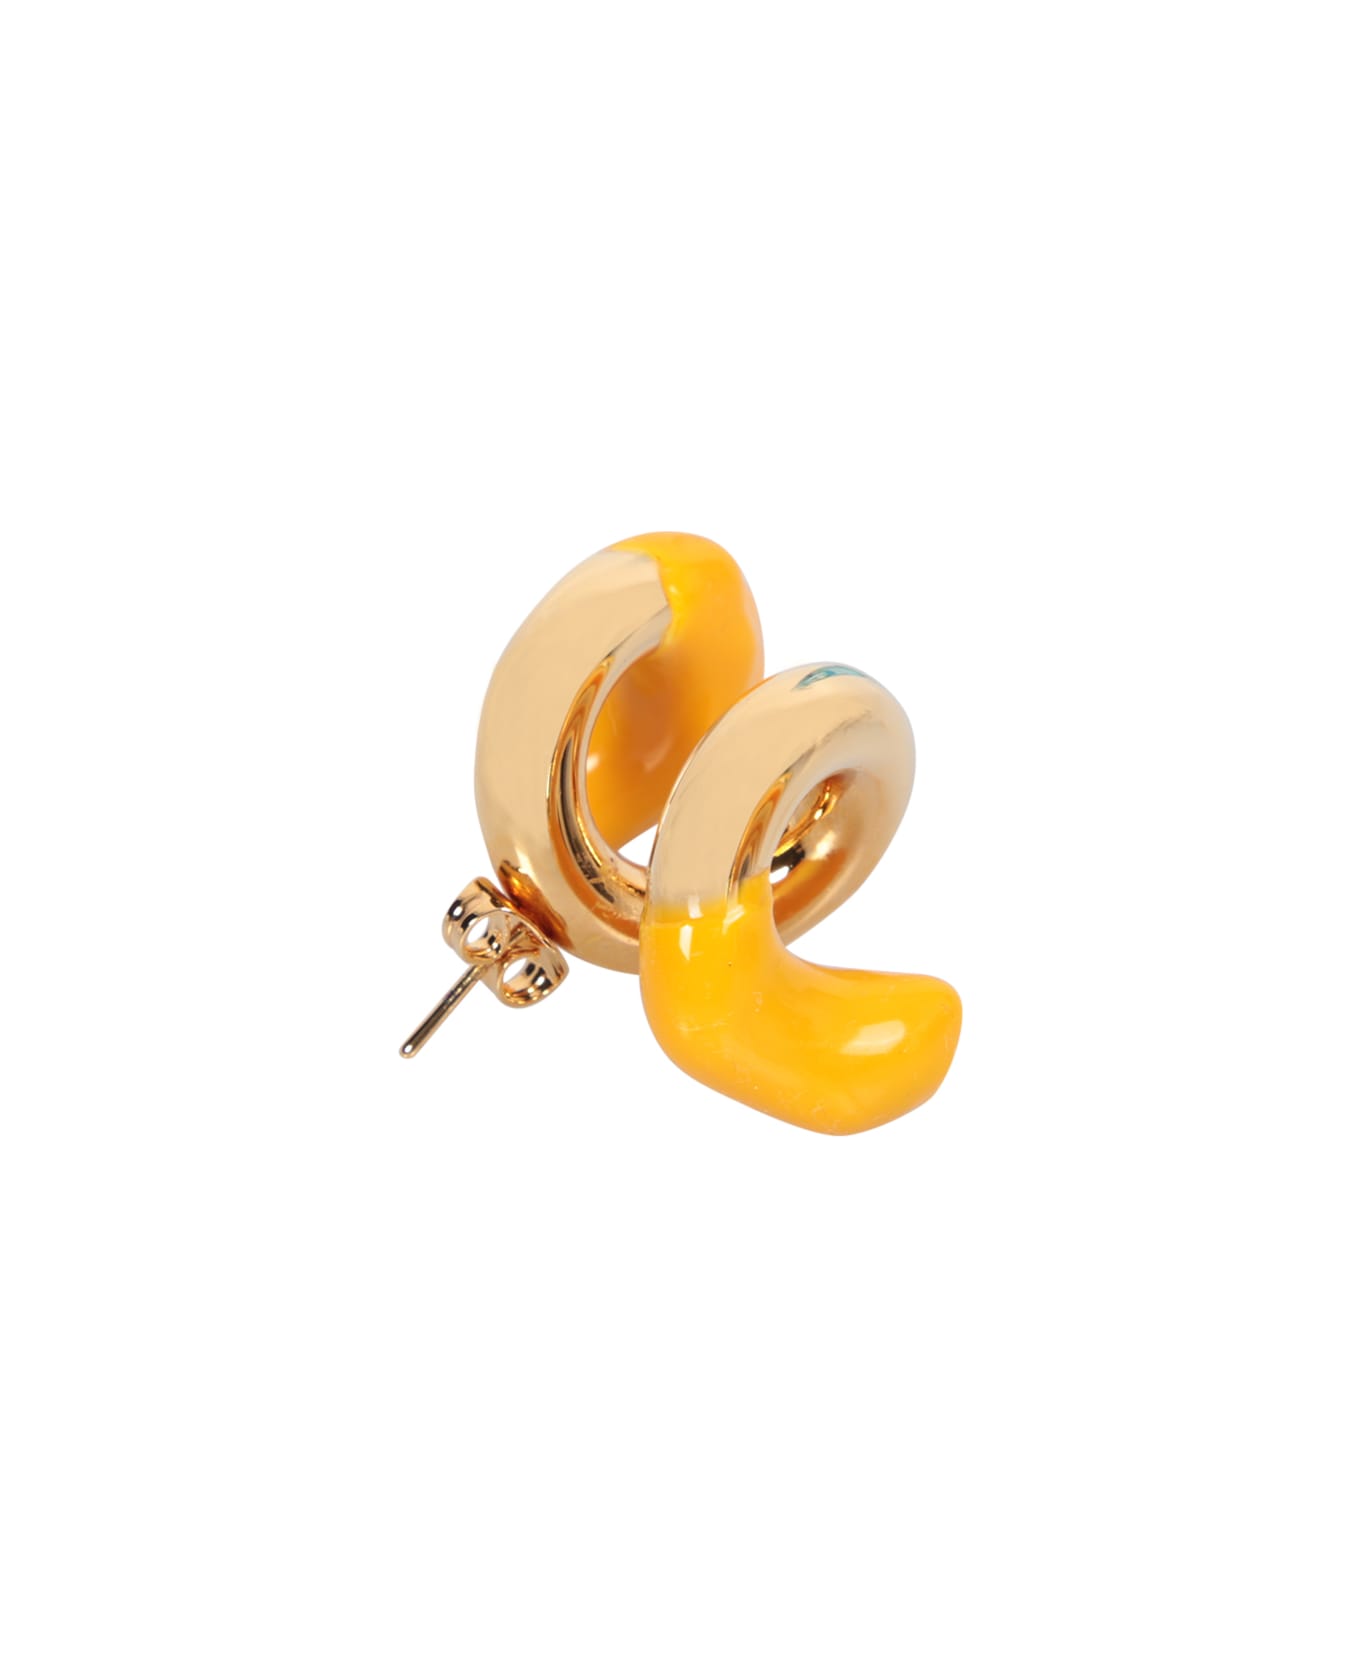 Sunnei Fusillo Rubberized Gold Earrings - Metallic